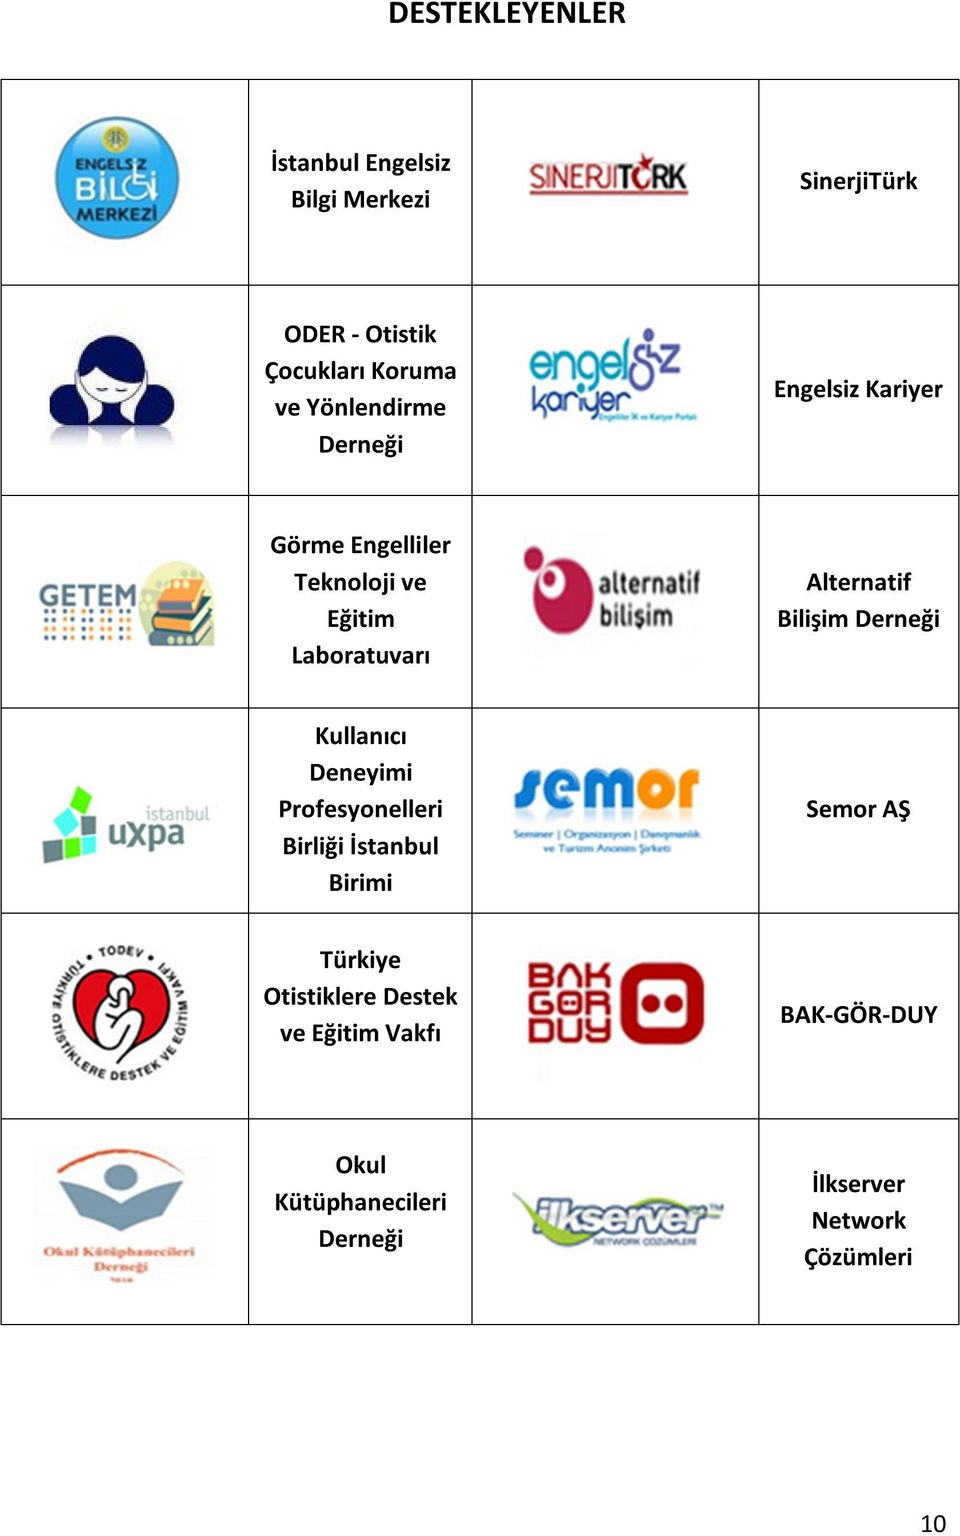 Bilişim Derneği Kullanıcı Deneyimi Profesyonelleri Birliği İstanbul Birimi Semor AŞ Türkiye